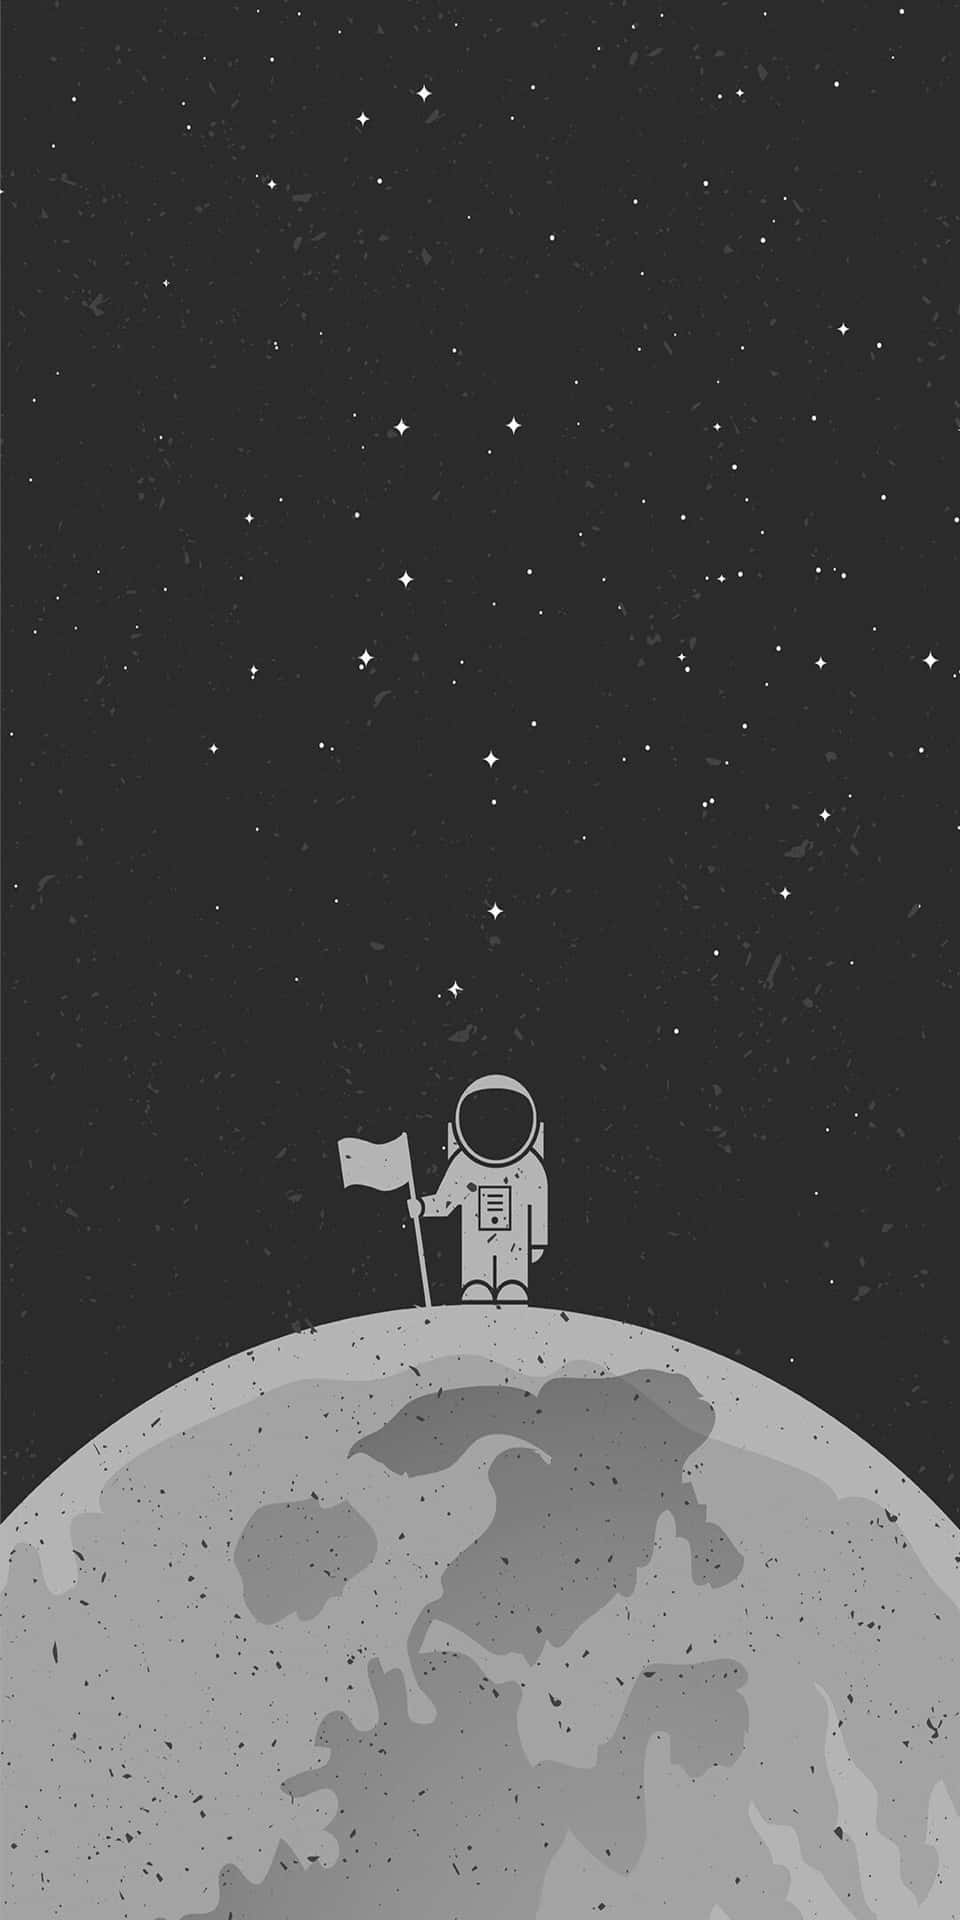 Sfondominimalista Per Pixel 3, Disegno Fanart Di Un Astronauta Sulla Luna.